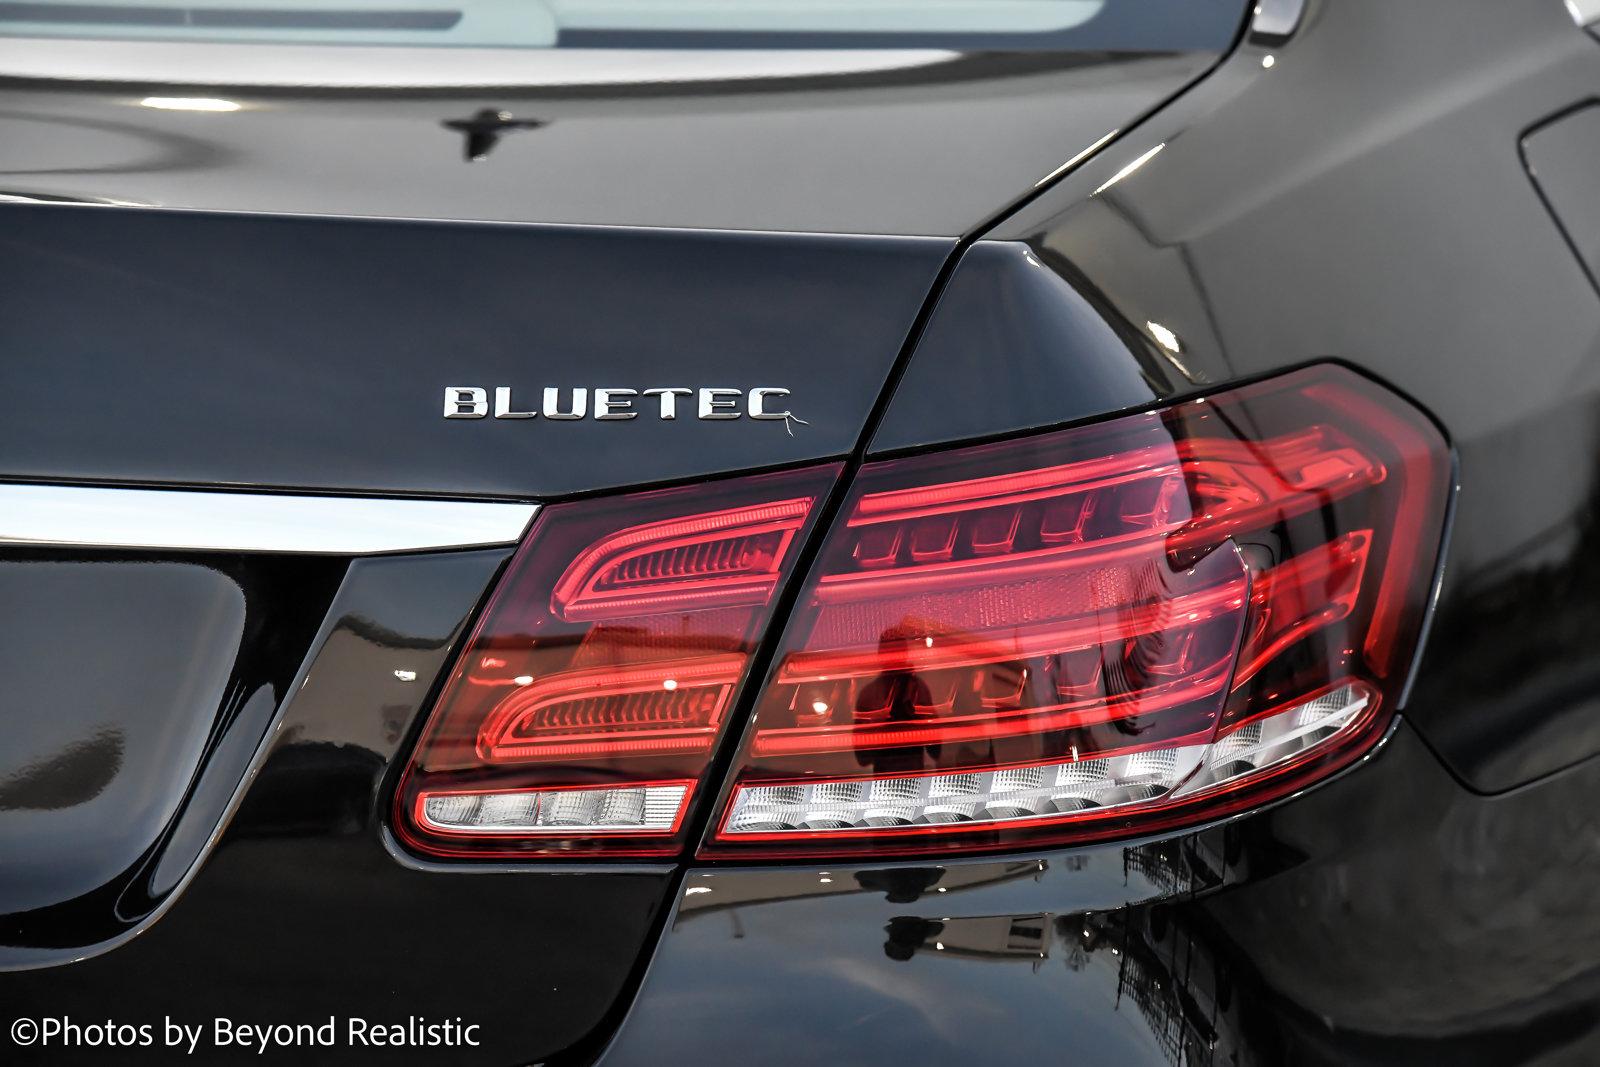 Used 2016 Mercedes-Benz E-Class E 250 BlueTEC Luxury | Downers Grove, IL